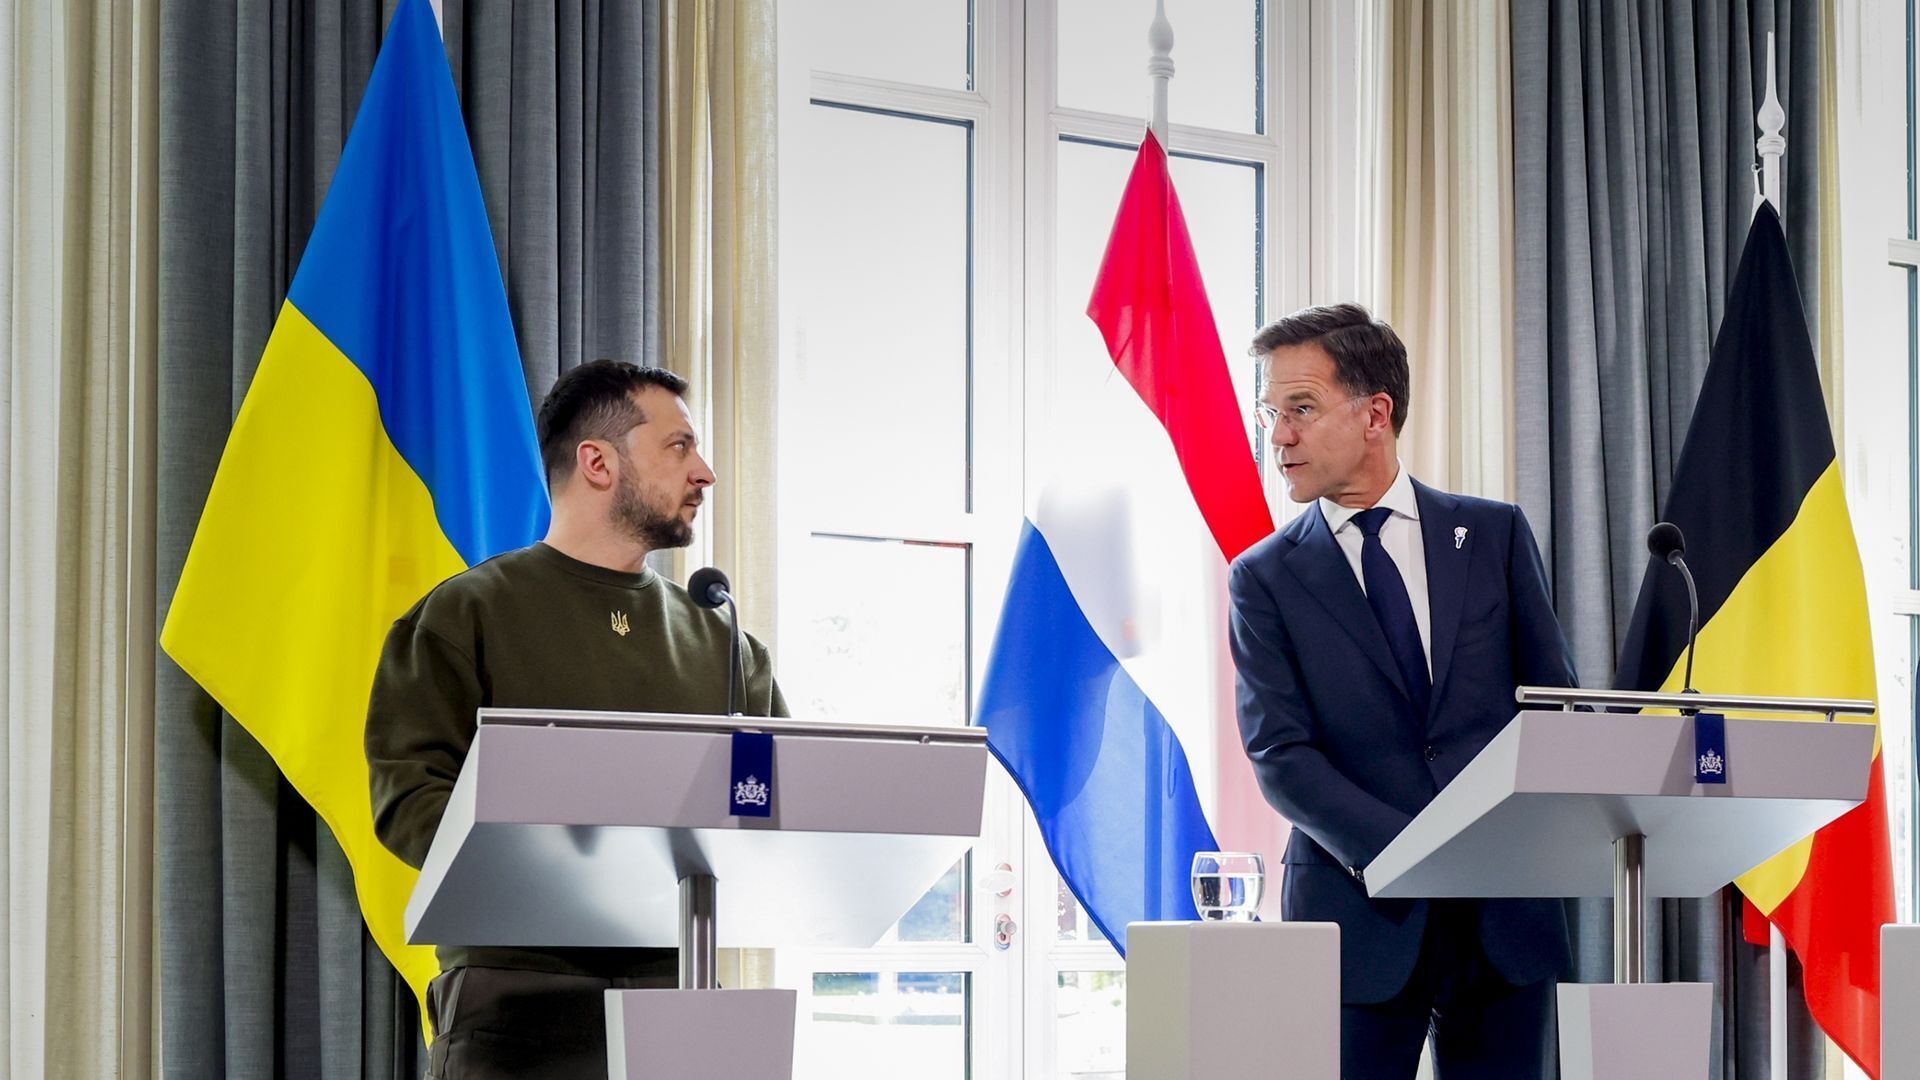 "Війна в Україні має бути останньою у світі": Зеленський виступив із потужною промовою в Гаазі